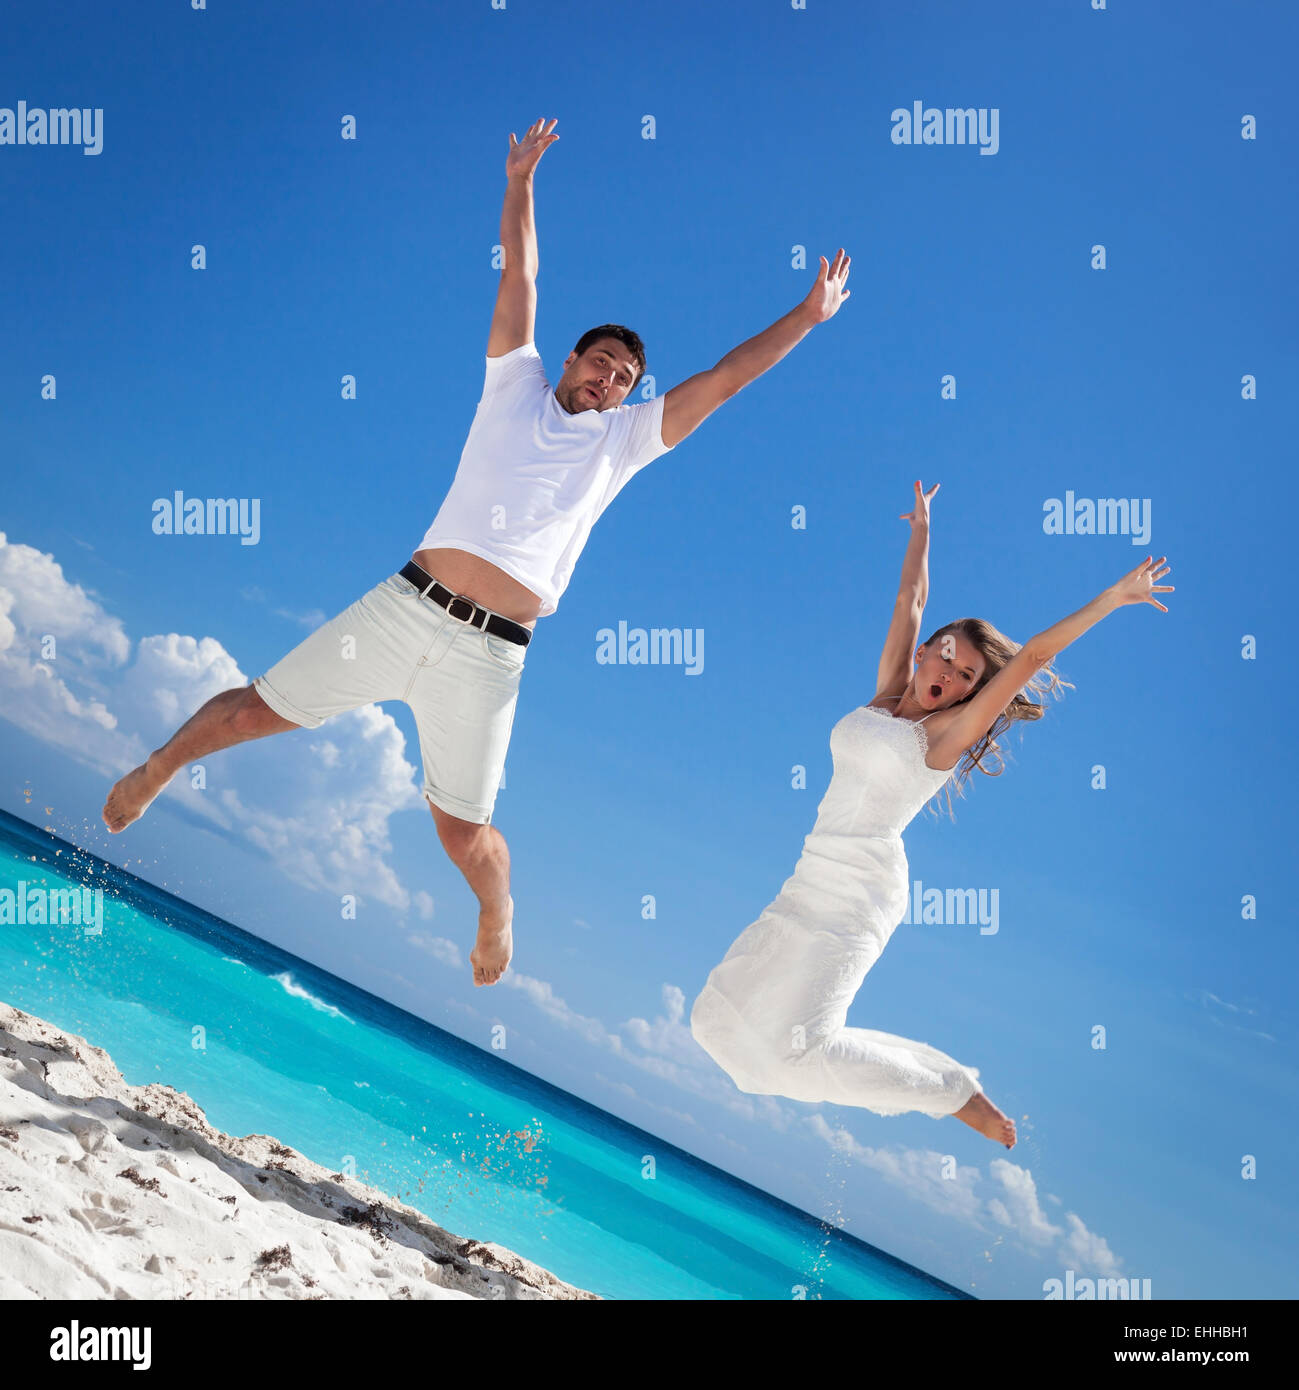 Los recién casados feliz saltando en la playa con fondo de cielo azul Foto de stock